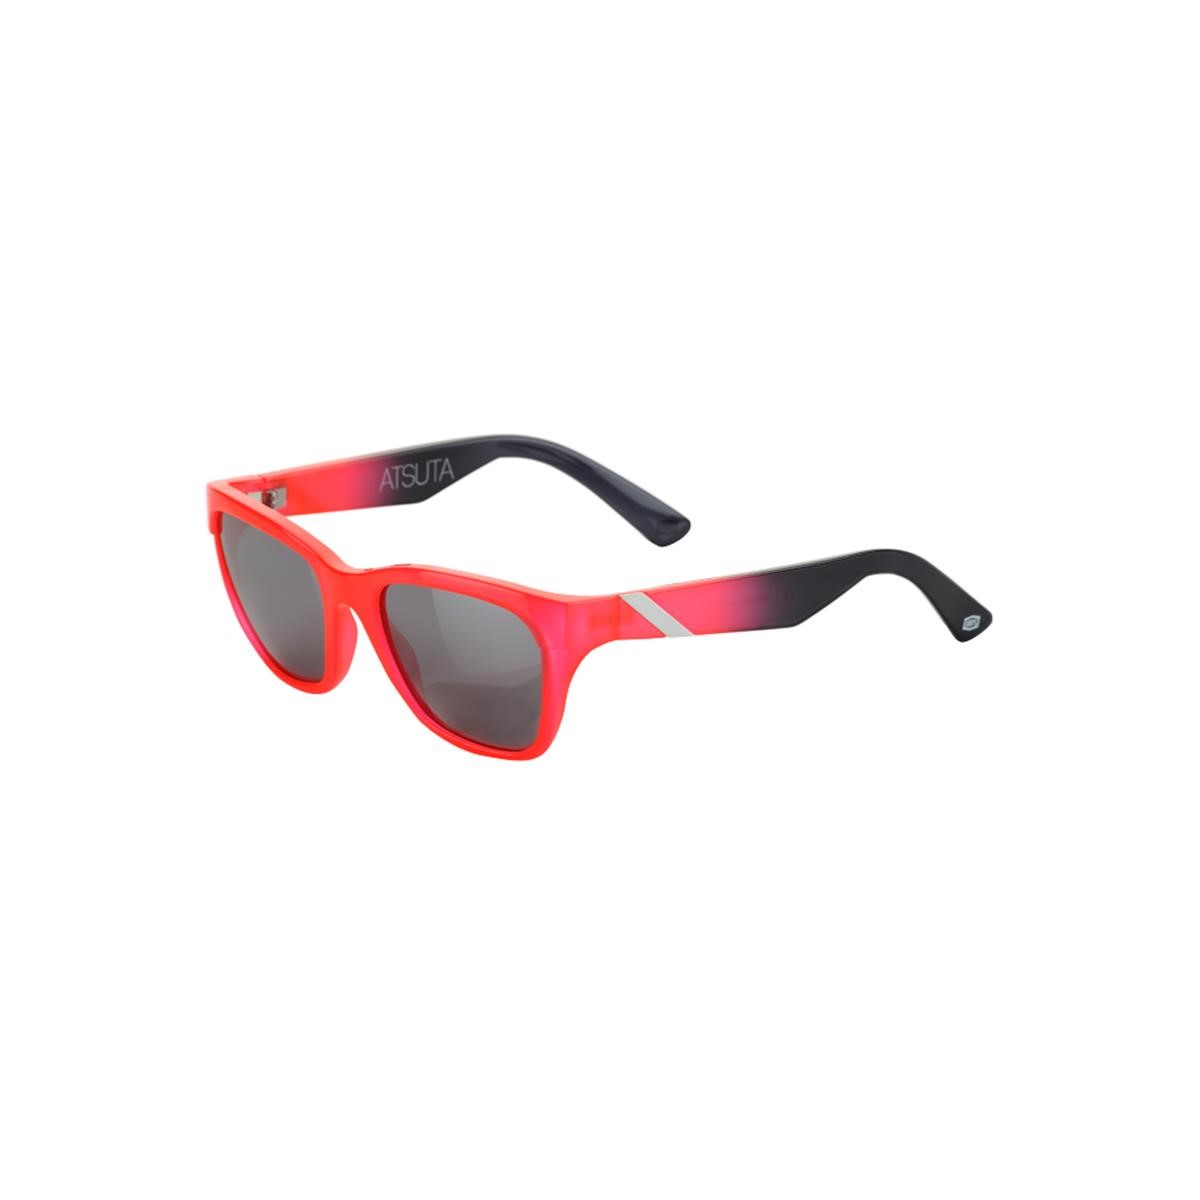 100% Sonnenbrille The Atsuta Neonrot/Black - Red verspiegelt